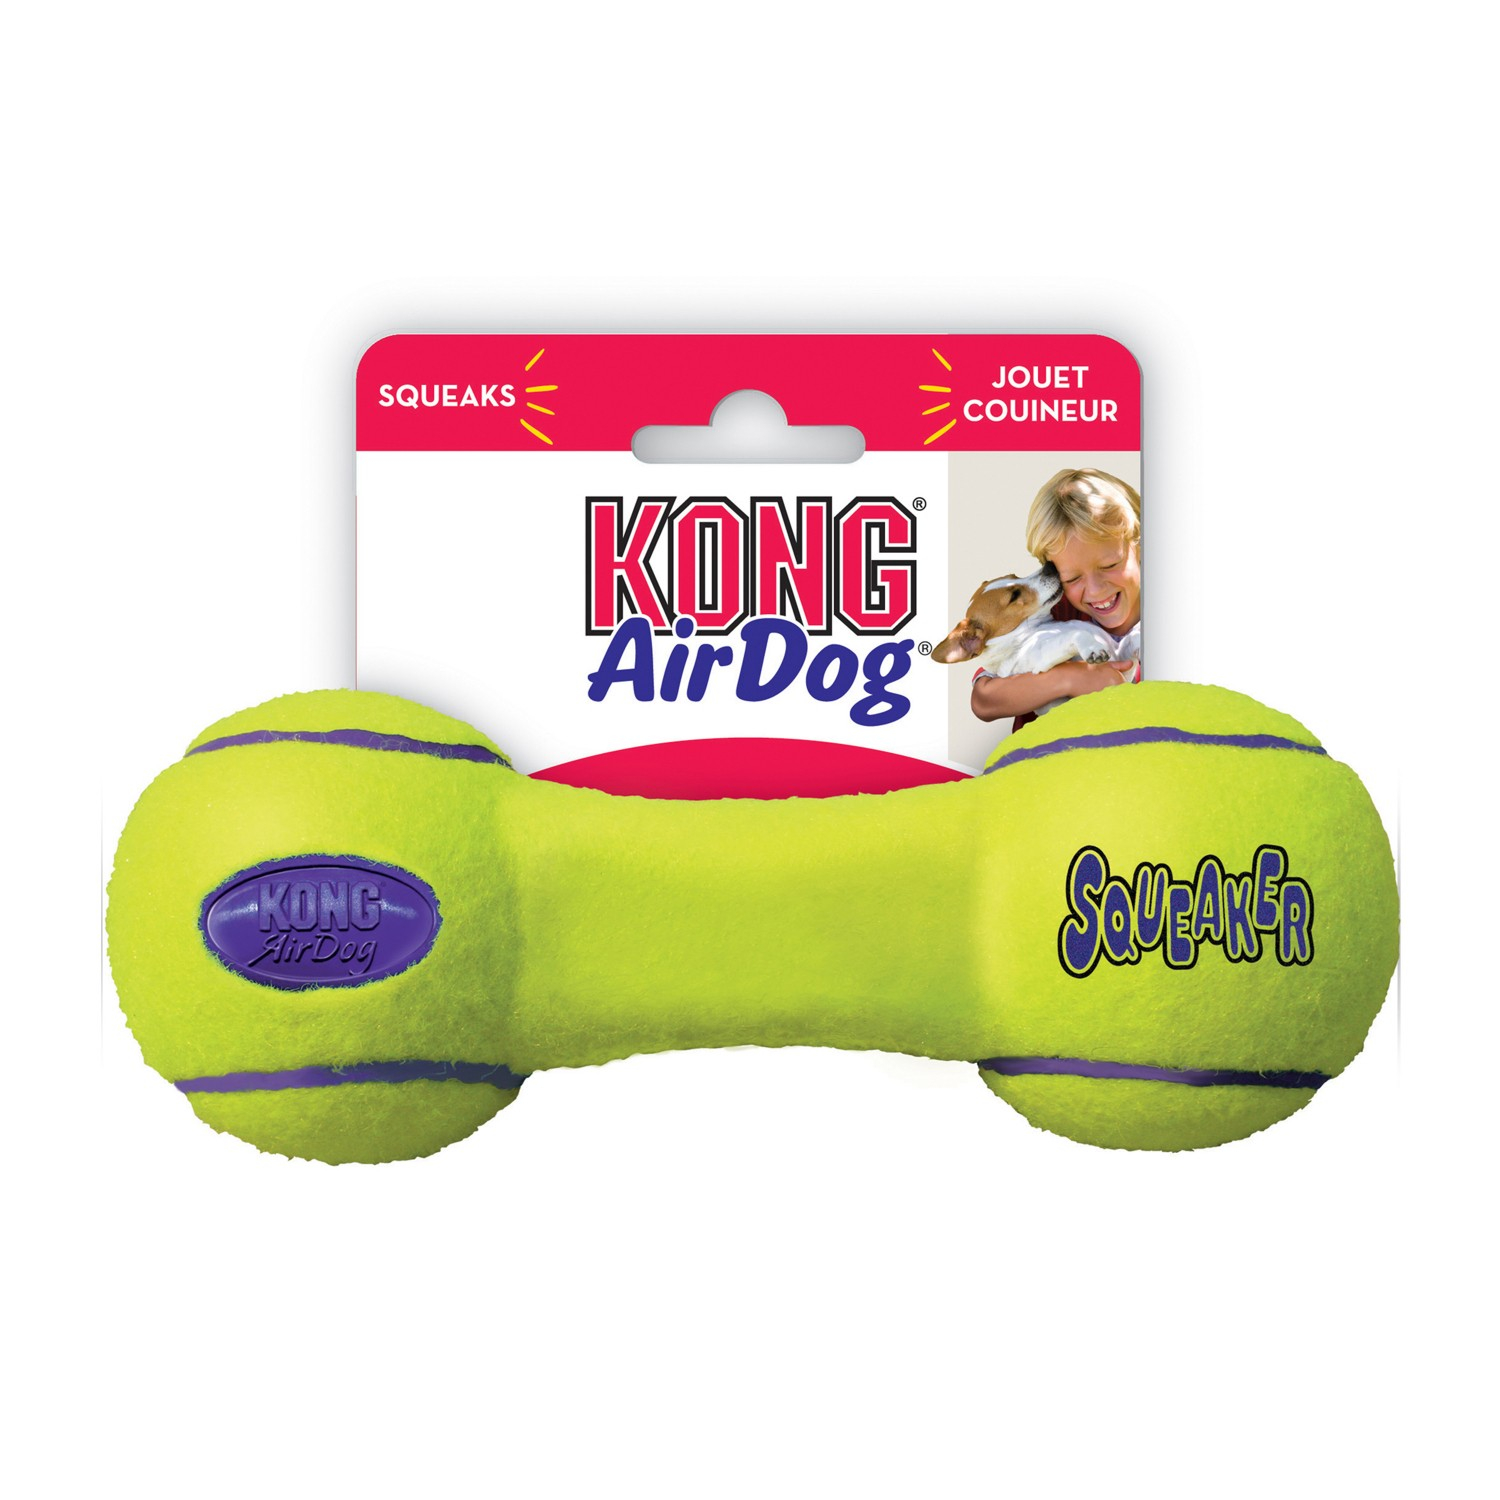  KONG Airdog Dumbbell 3 tallas - juguete para perros de todos los tamaños - sonora y rebota 